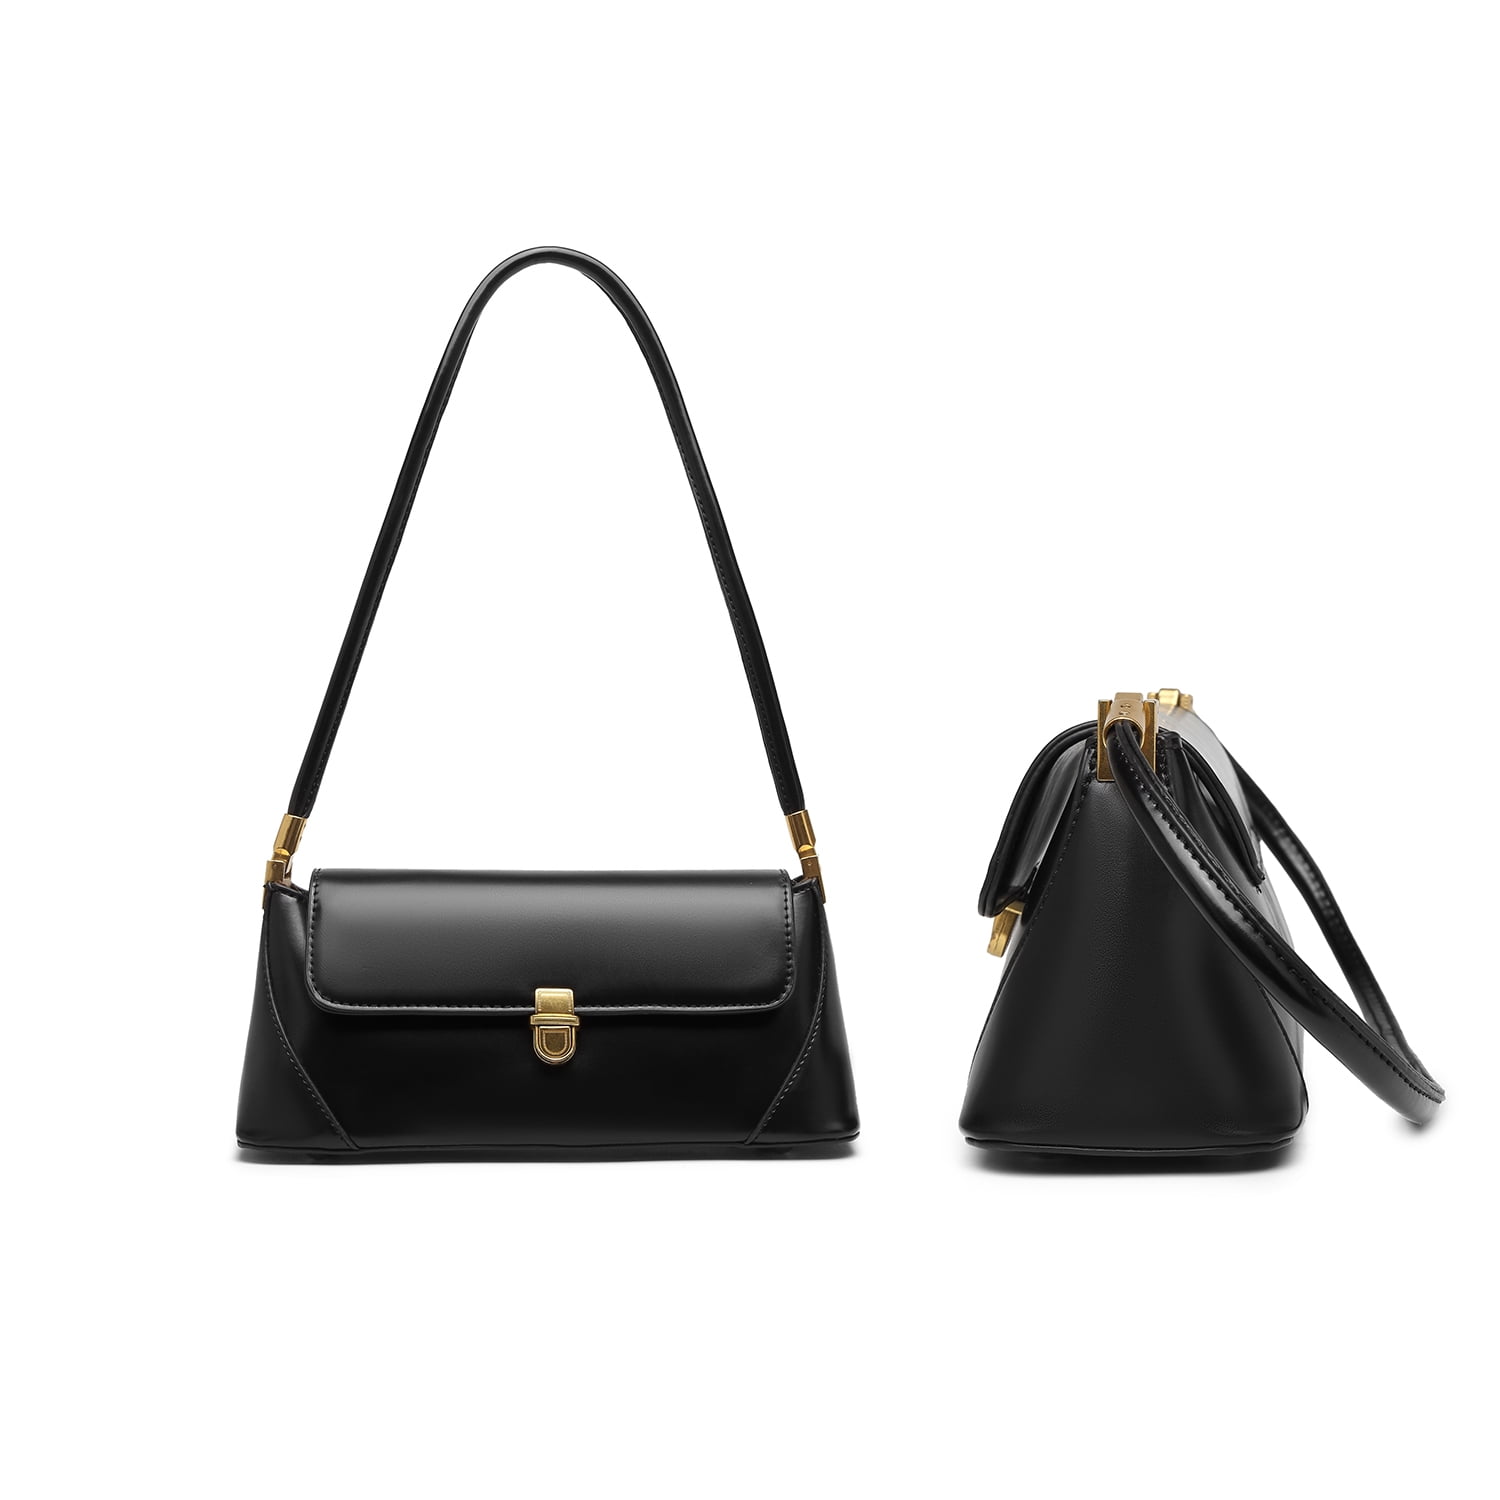 Black Small Clutch Shoulder Bag for Women Leather Mini Tote Vintage HandbagPurse Retro Classic Small Purse 90s Buckle Closure 579e8fe1 dc8f 4630 a53a b9fcf60bd710.c353f174cfa20a2e59e9e37e0be47a14